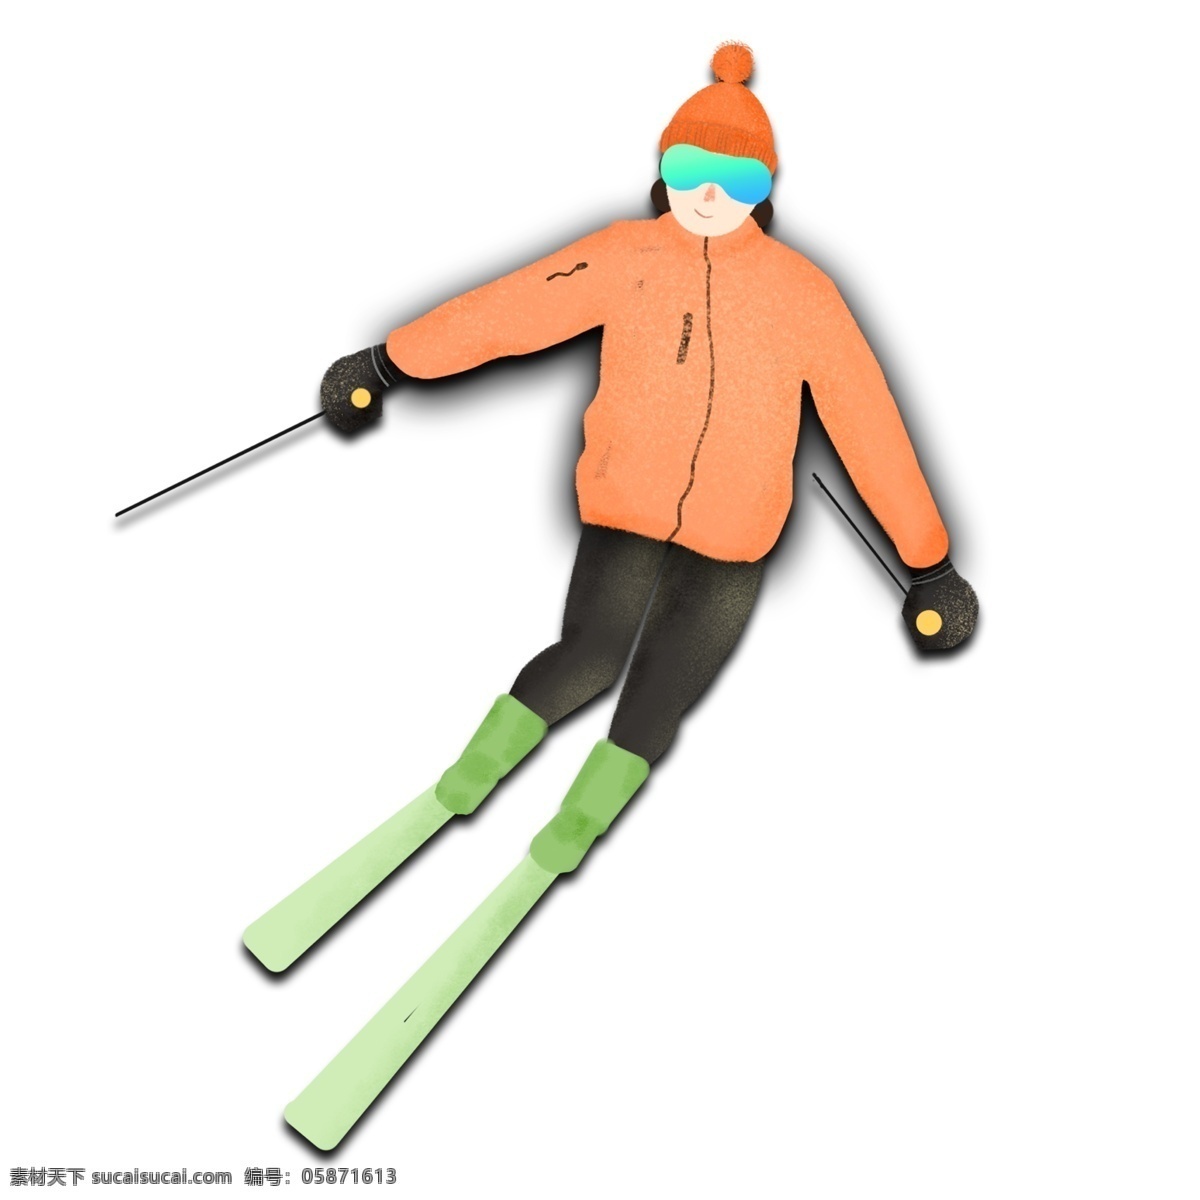 手绘 卡通 女孩 滑雪 原创 元素 可爱 羽绒服 冬季 运动 滑雪橇 原创元素 设计元素